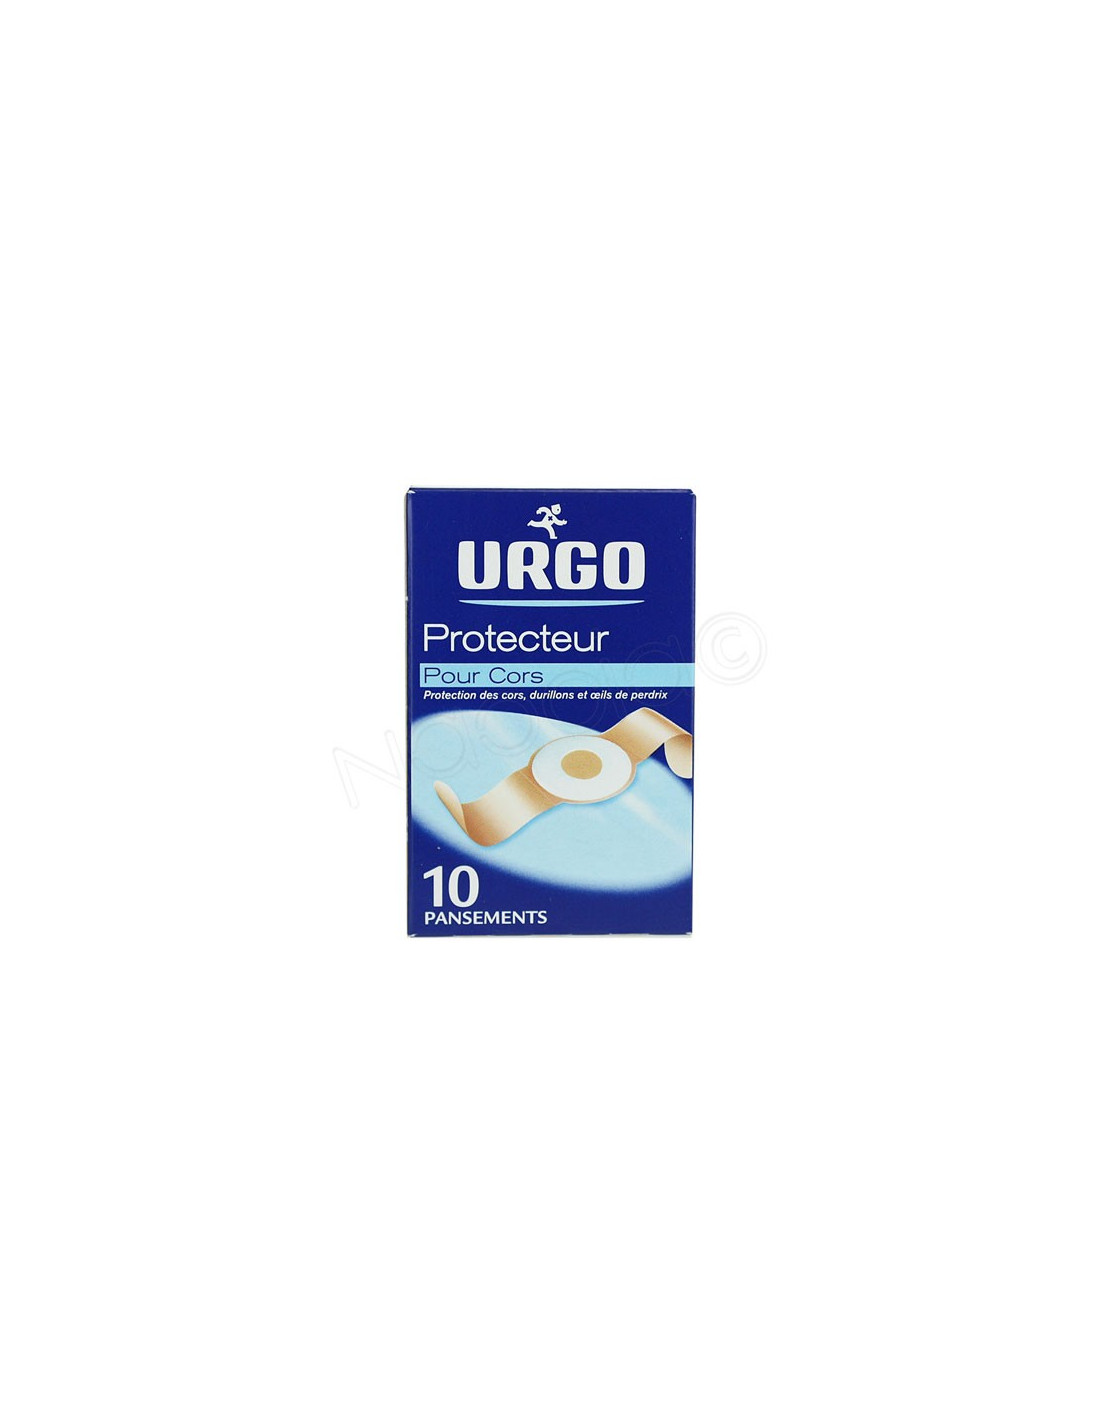 Pansement protecteur cors Urgo - Soin des pieds - 10 pansements